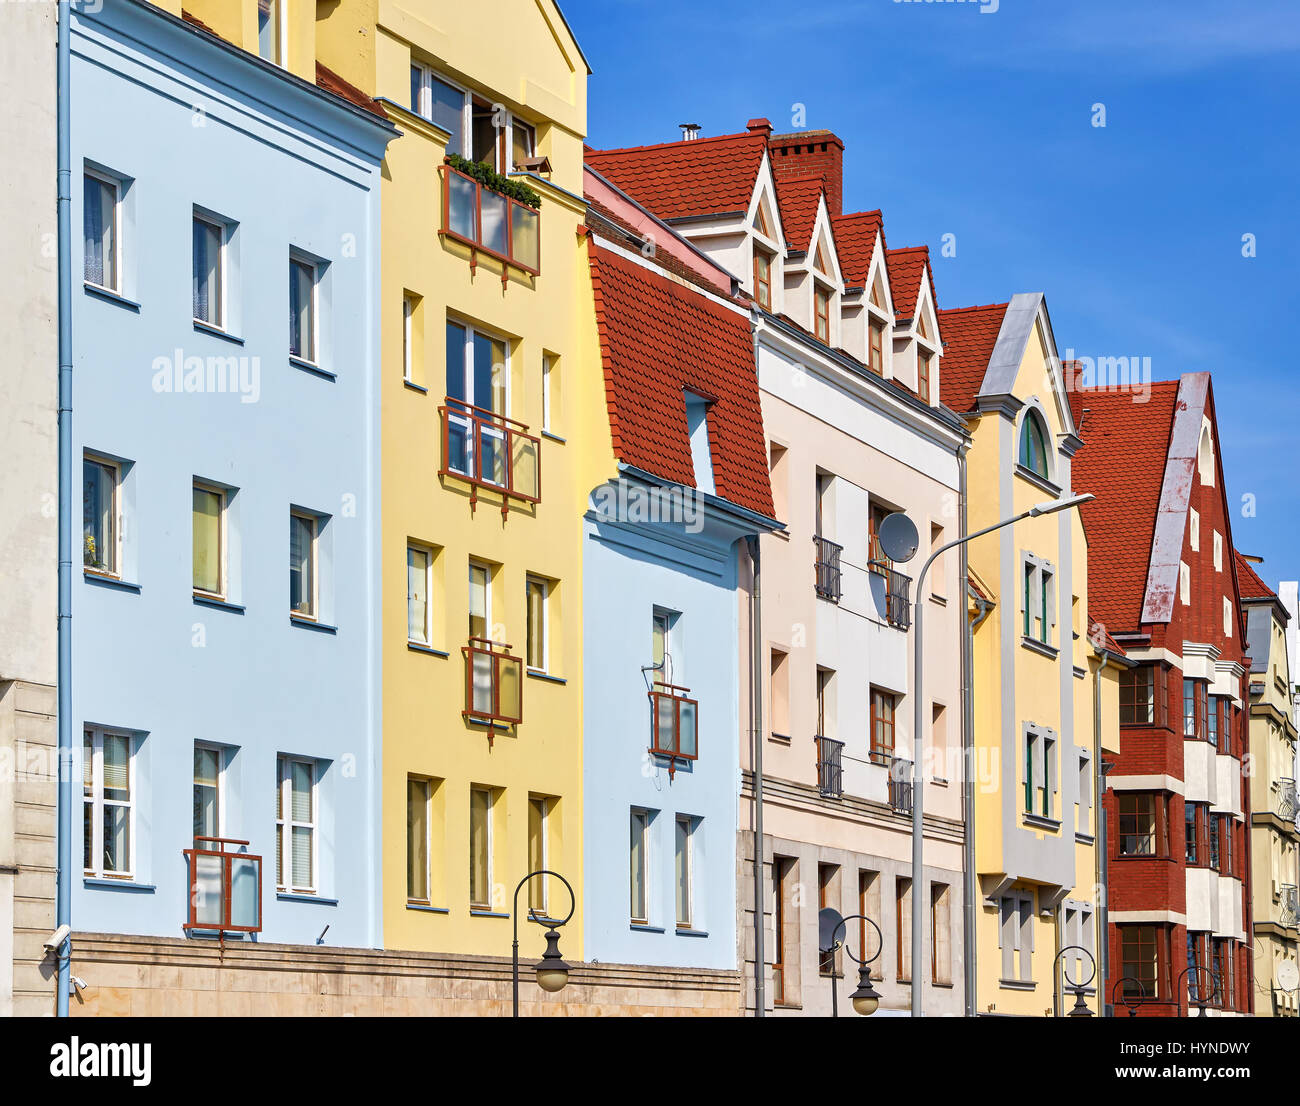 Colorful tenement house facade, Szczecin, Poland. Stock Photo